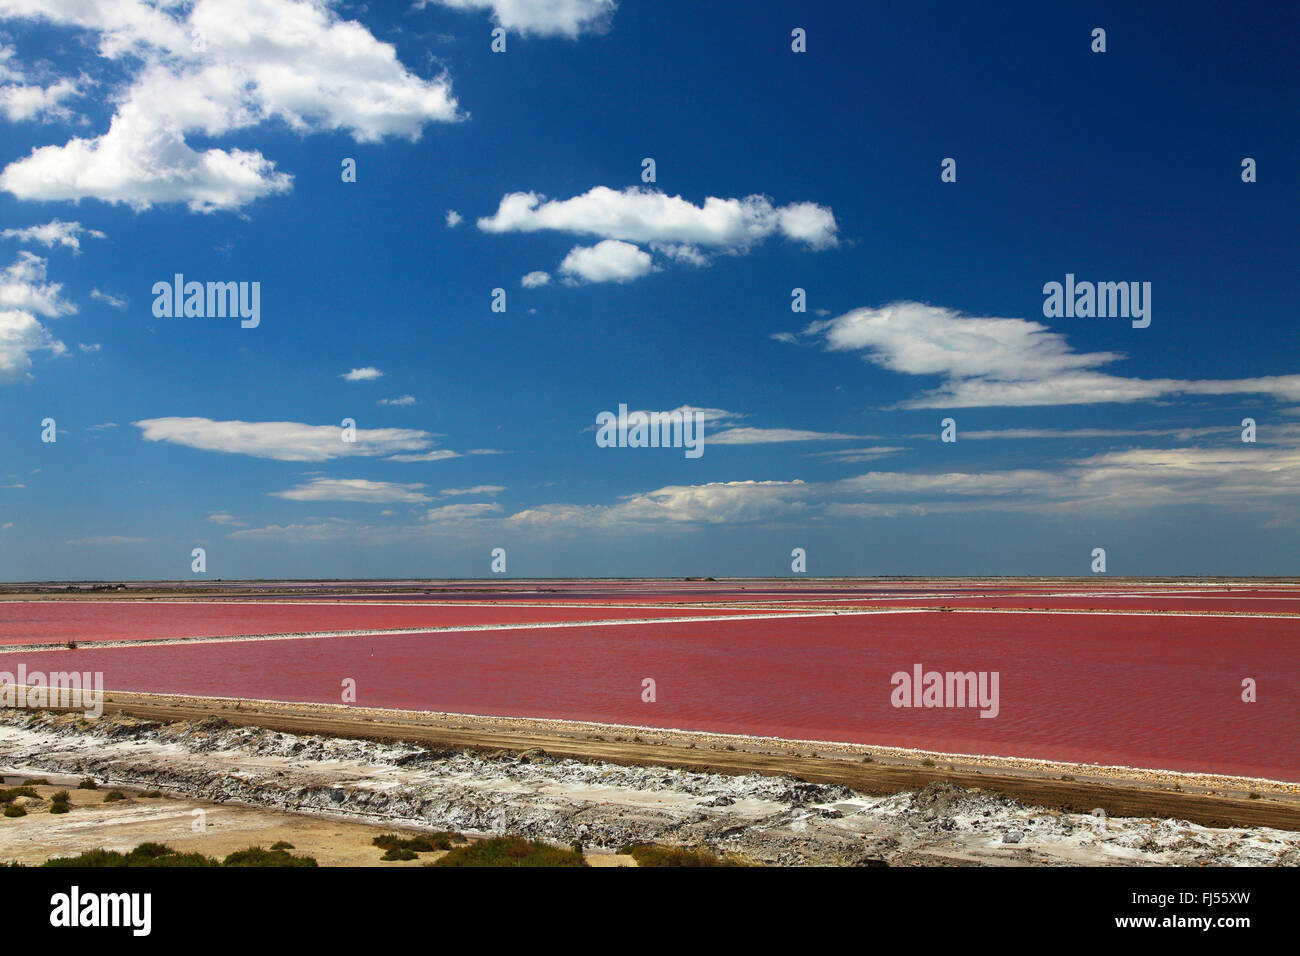 Microorganismos cambiar el color rojo de los estanques de evaporación de sal de una salina cerca de Salin de Giraud, Francia, la Camarga Foto de stock